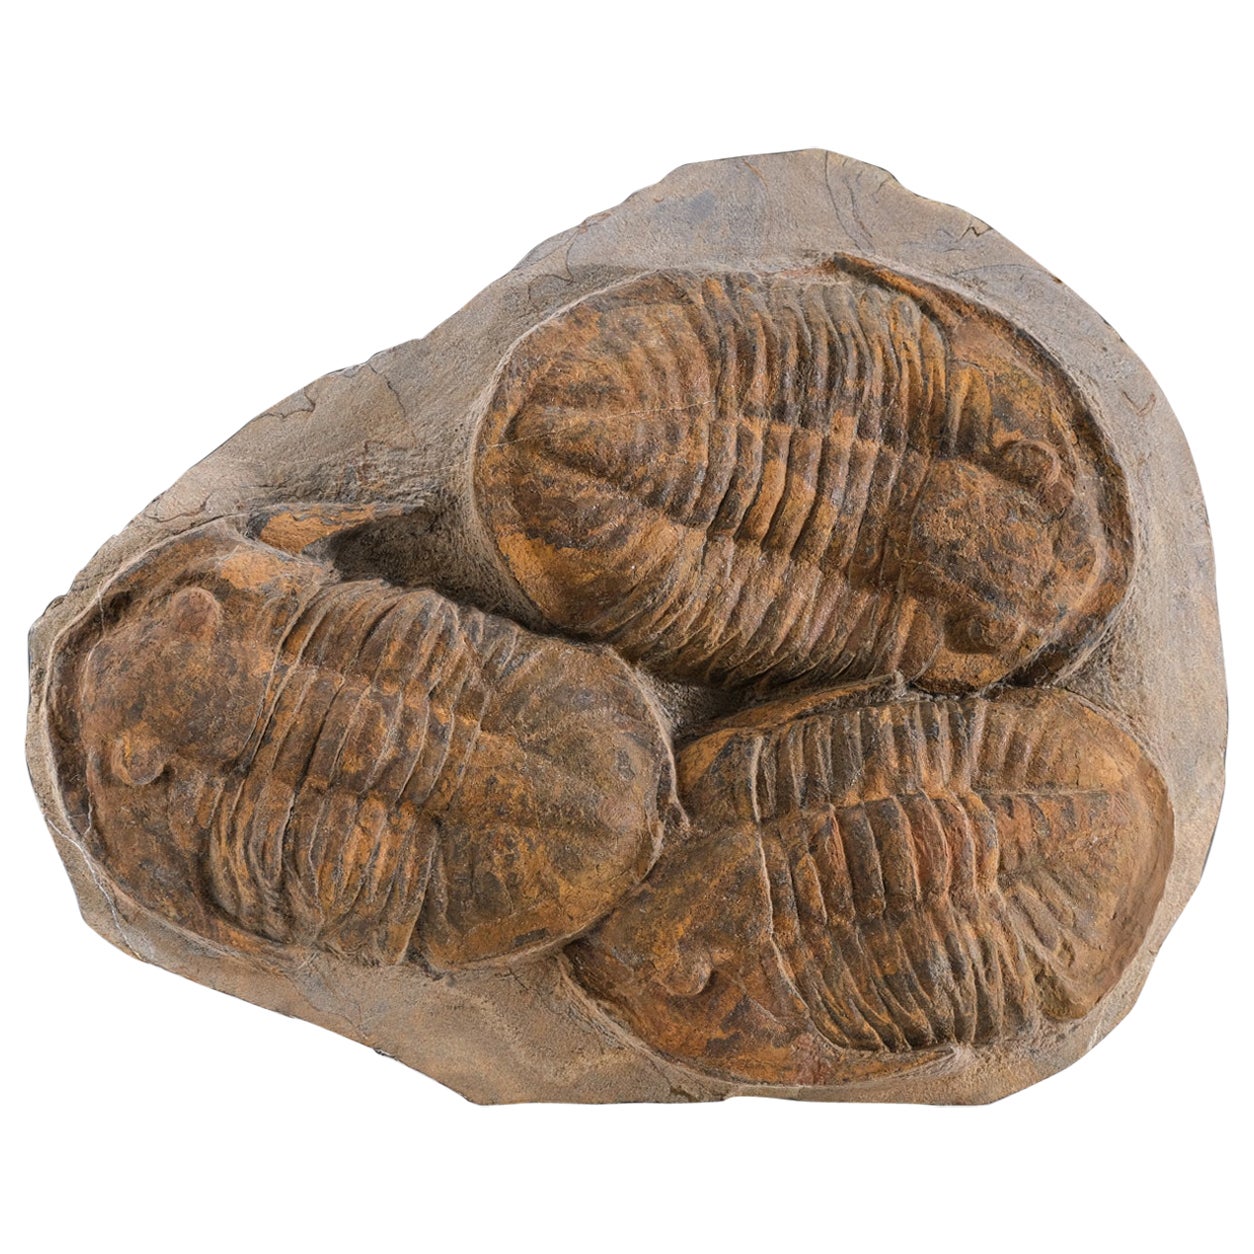 Genuine Trilobite (Ptychopariida) fossil on Matrix with acrylic display stand (6